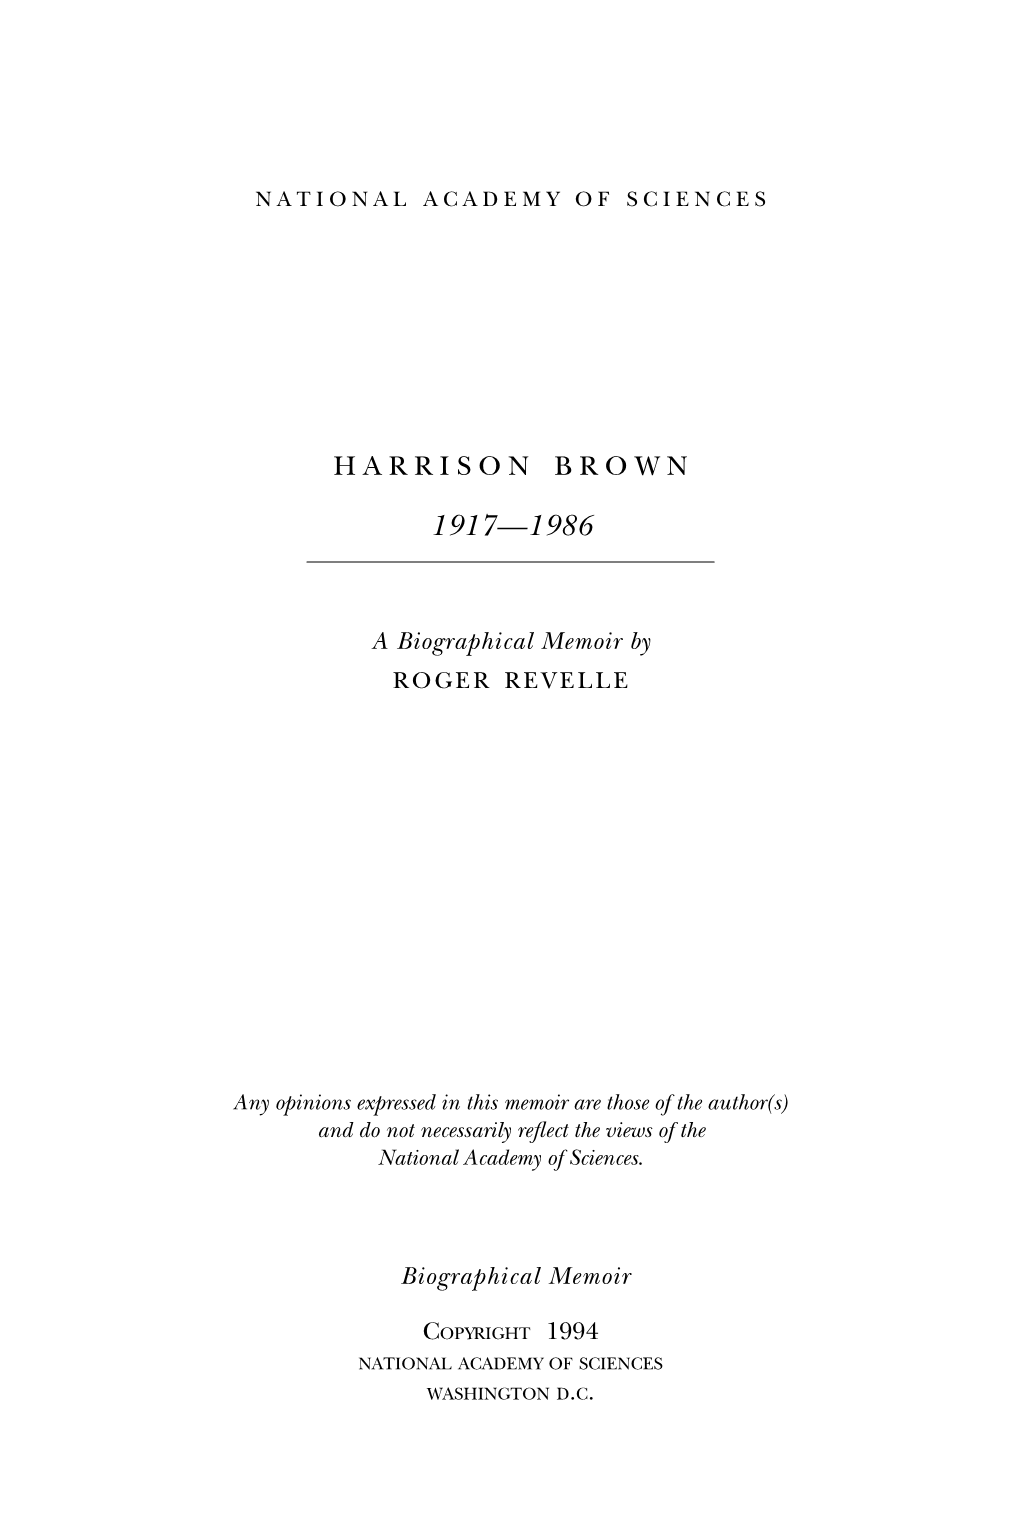 HARRISON BROWN September 26, 1911-December 8, 1986